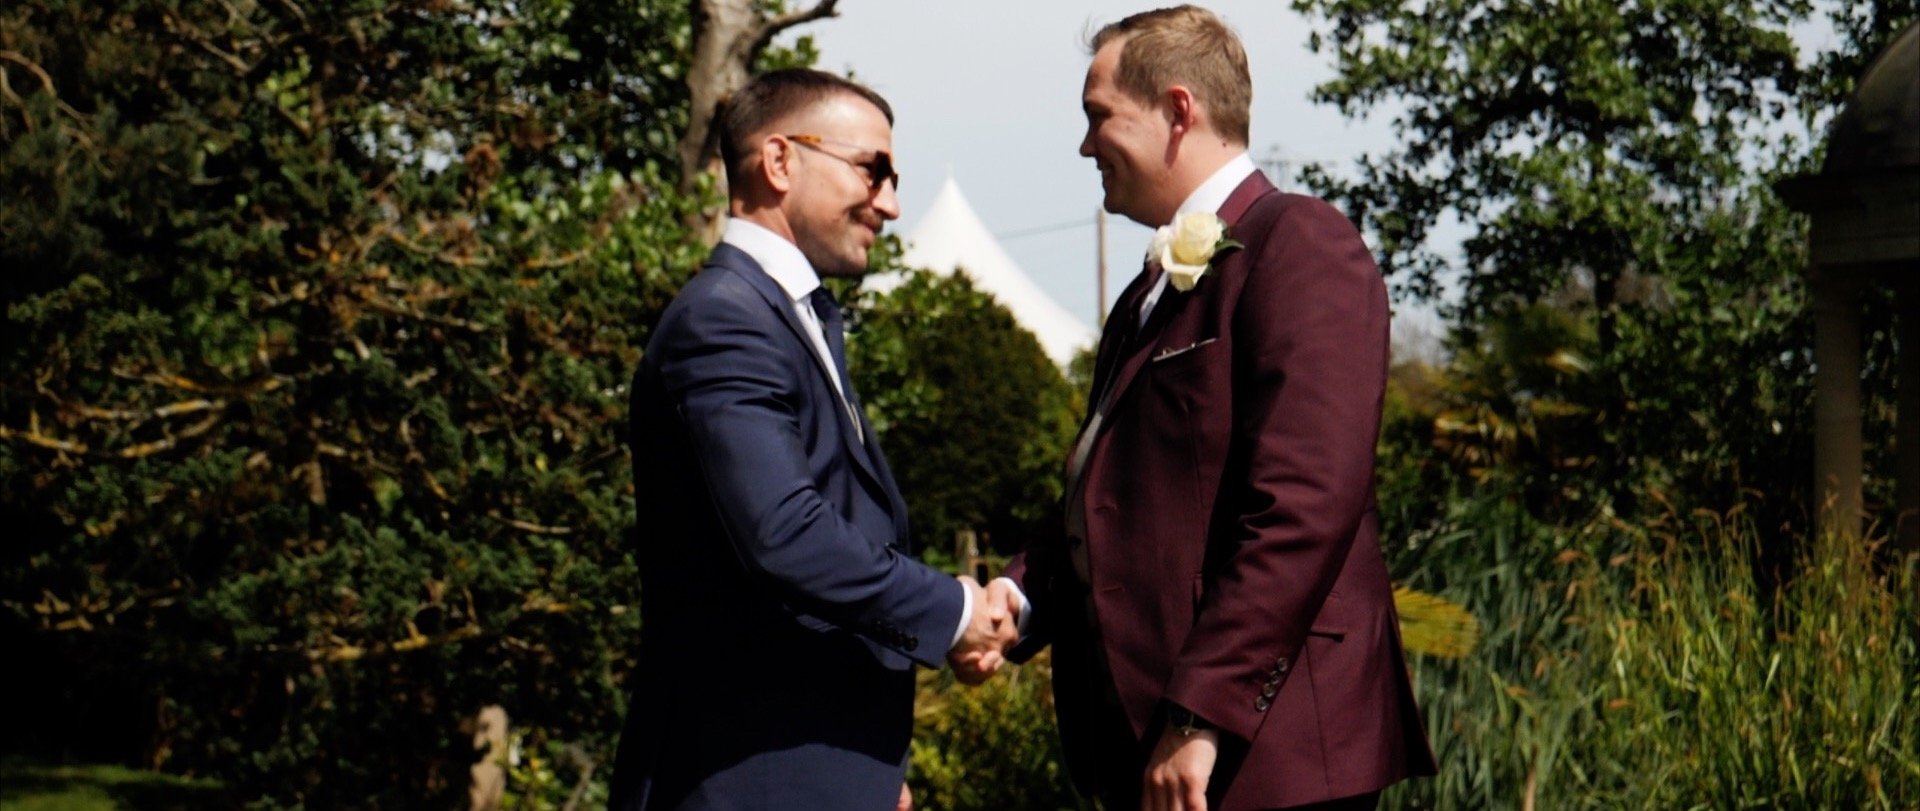 Best man and groom handshake wedding videos 3 cheers media.jpg